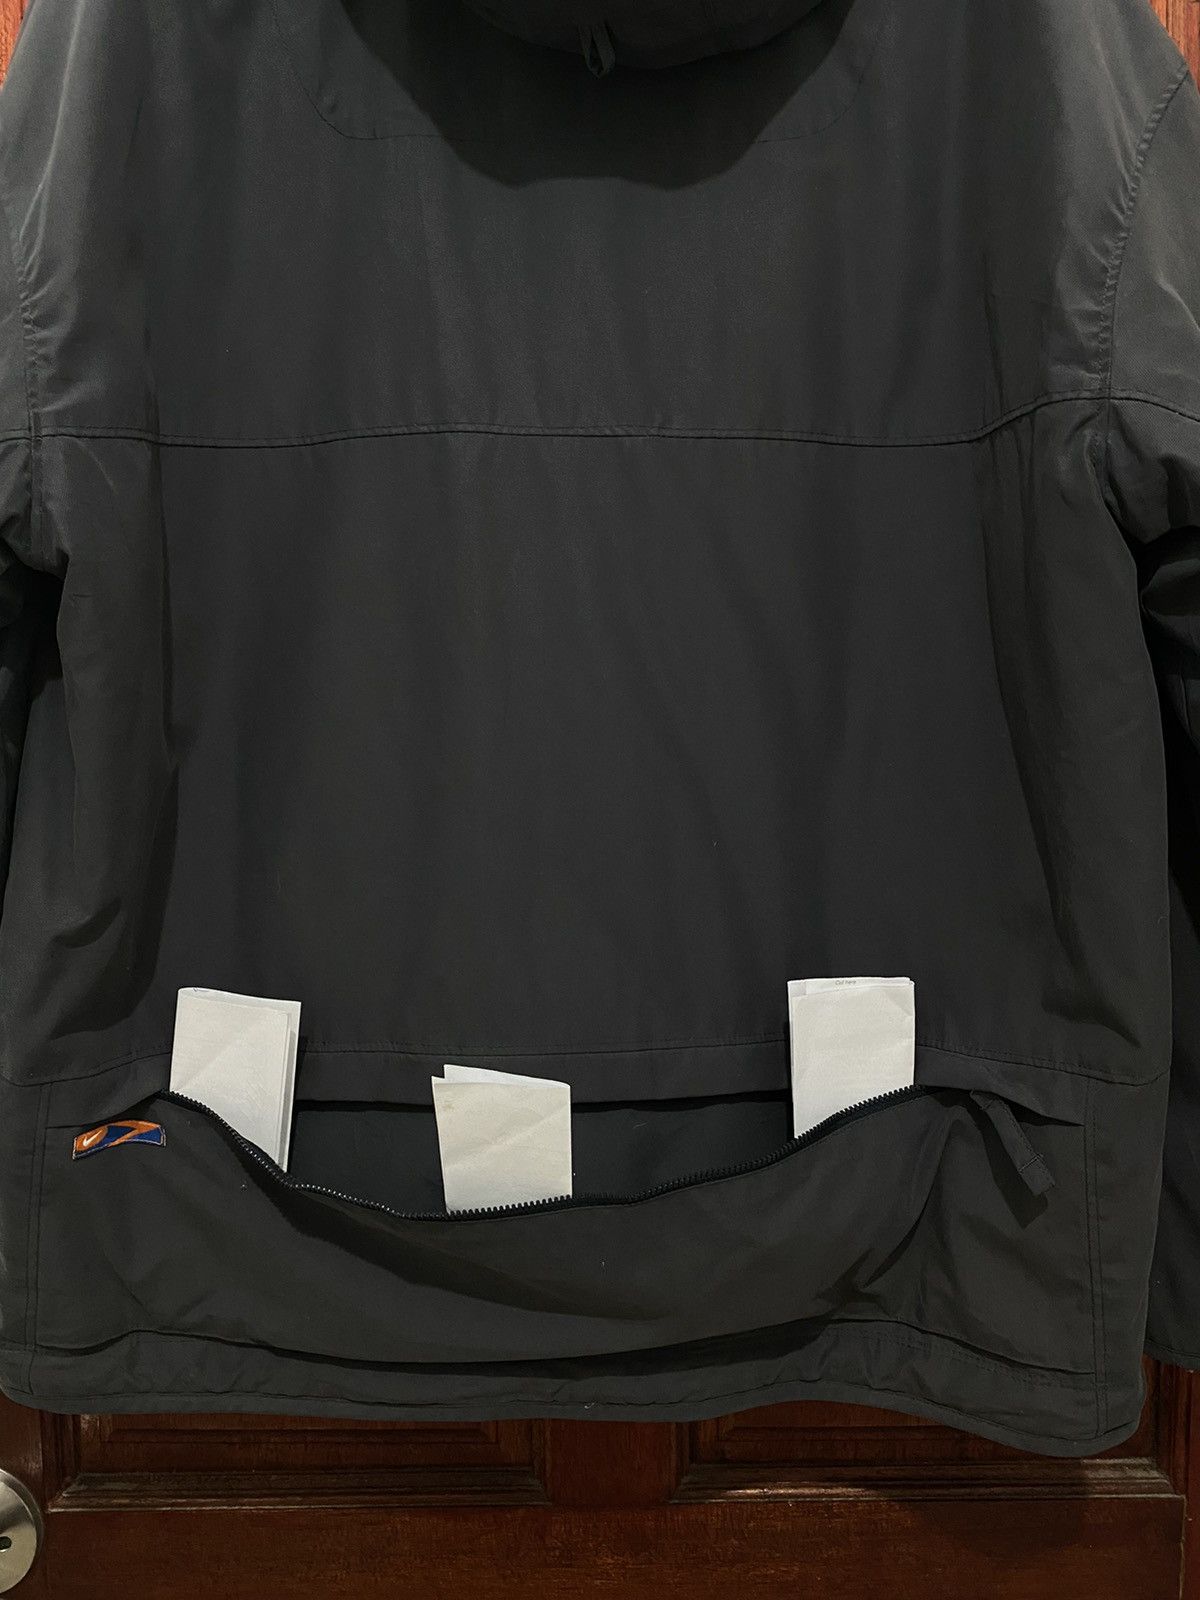 Nike Pullover Anorak Hoodie Jacket Nice Design - 6